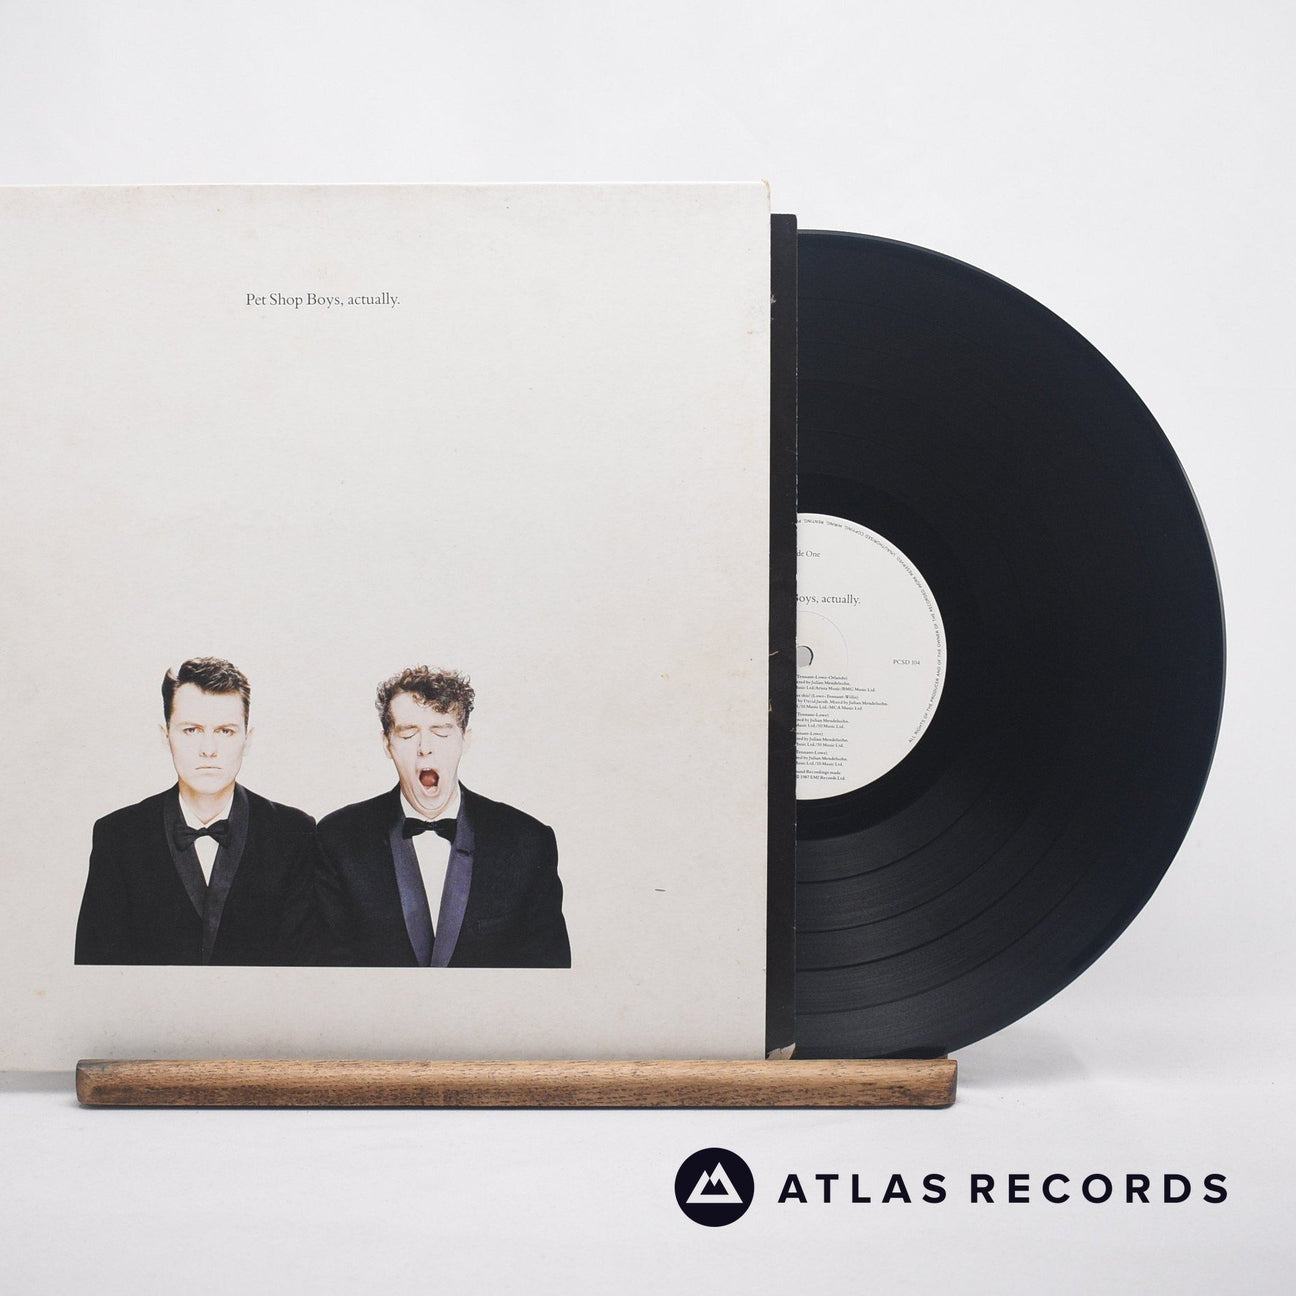 Pet Shop Boys Actually LP Vinyl Record - Front Cover & Record